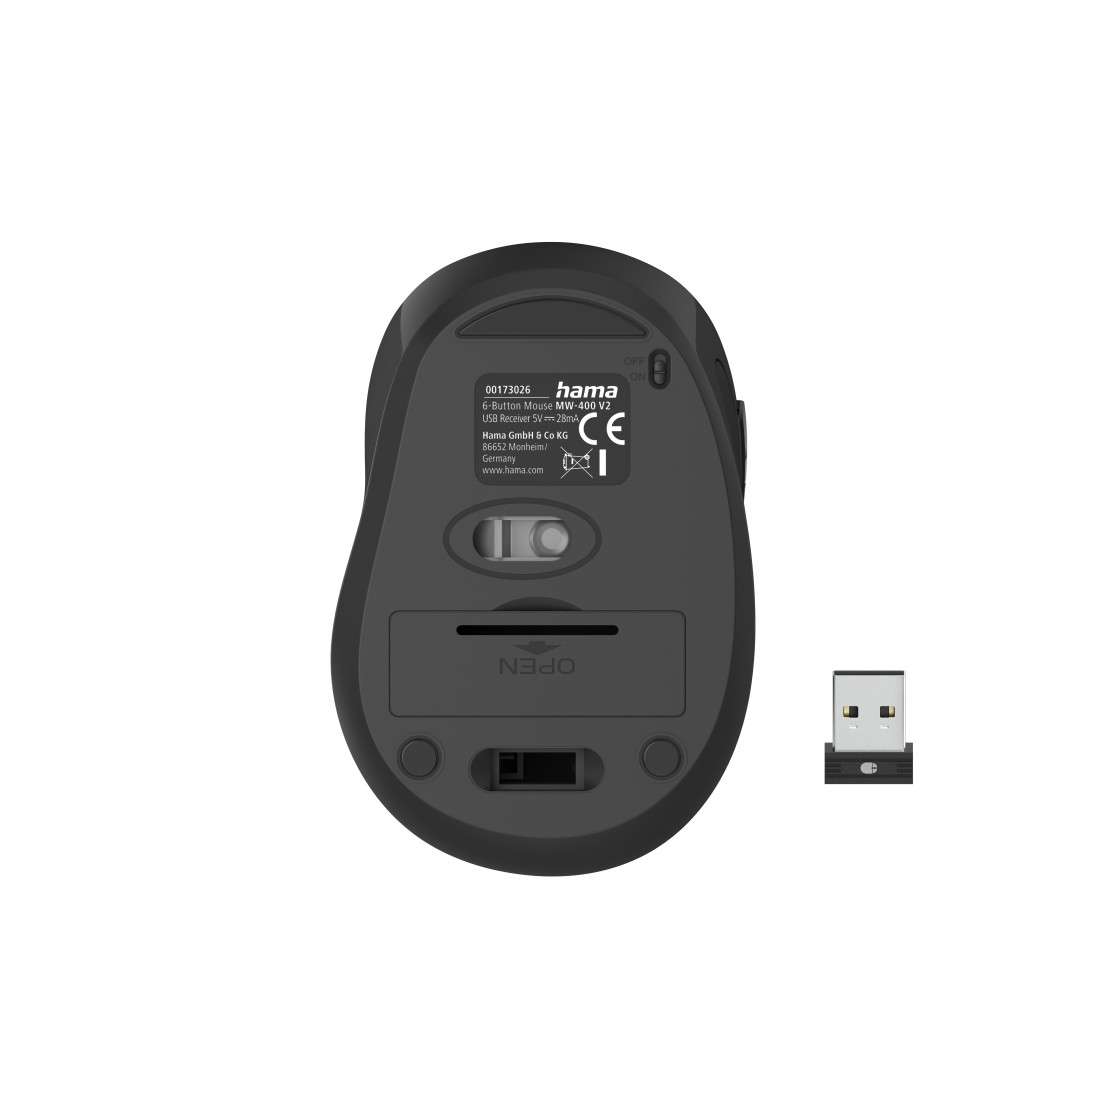 USB-Empf., | 00173026 Schwarz 6-Tasten-Funkmaus Optische MW-400 V2, ergonomisch,